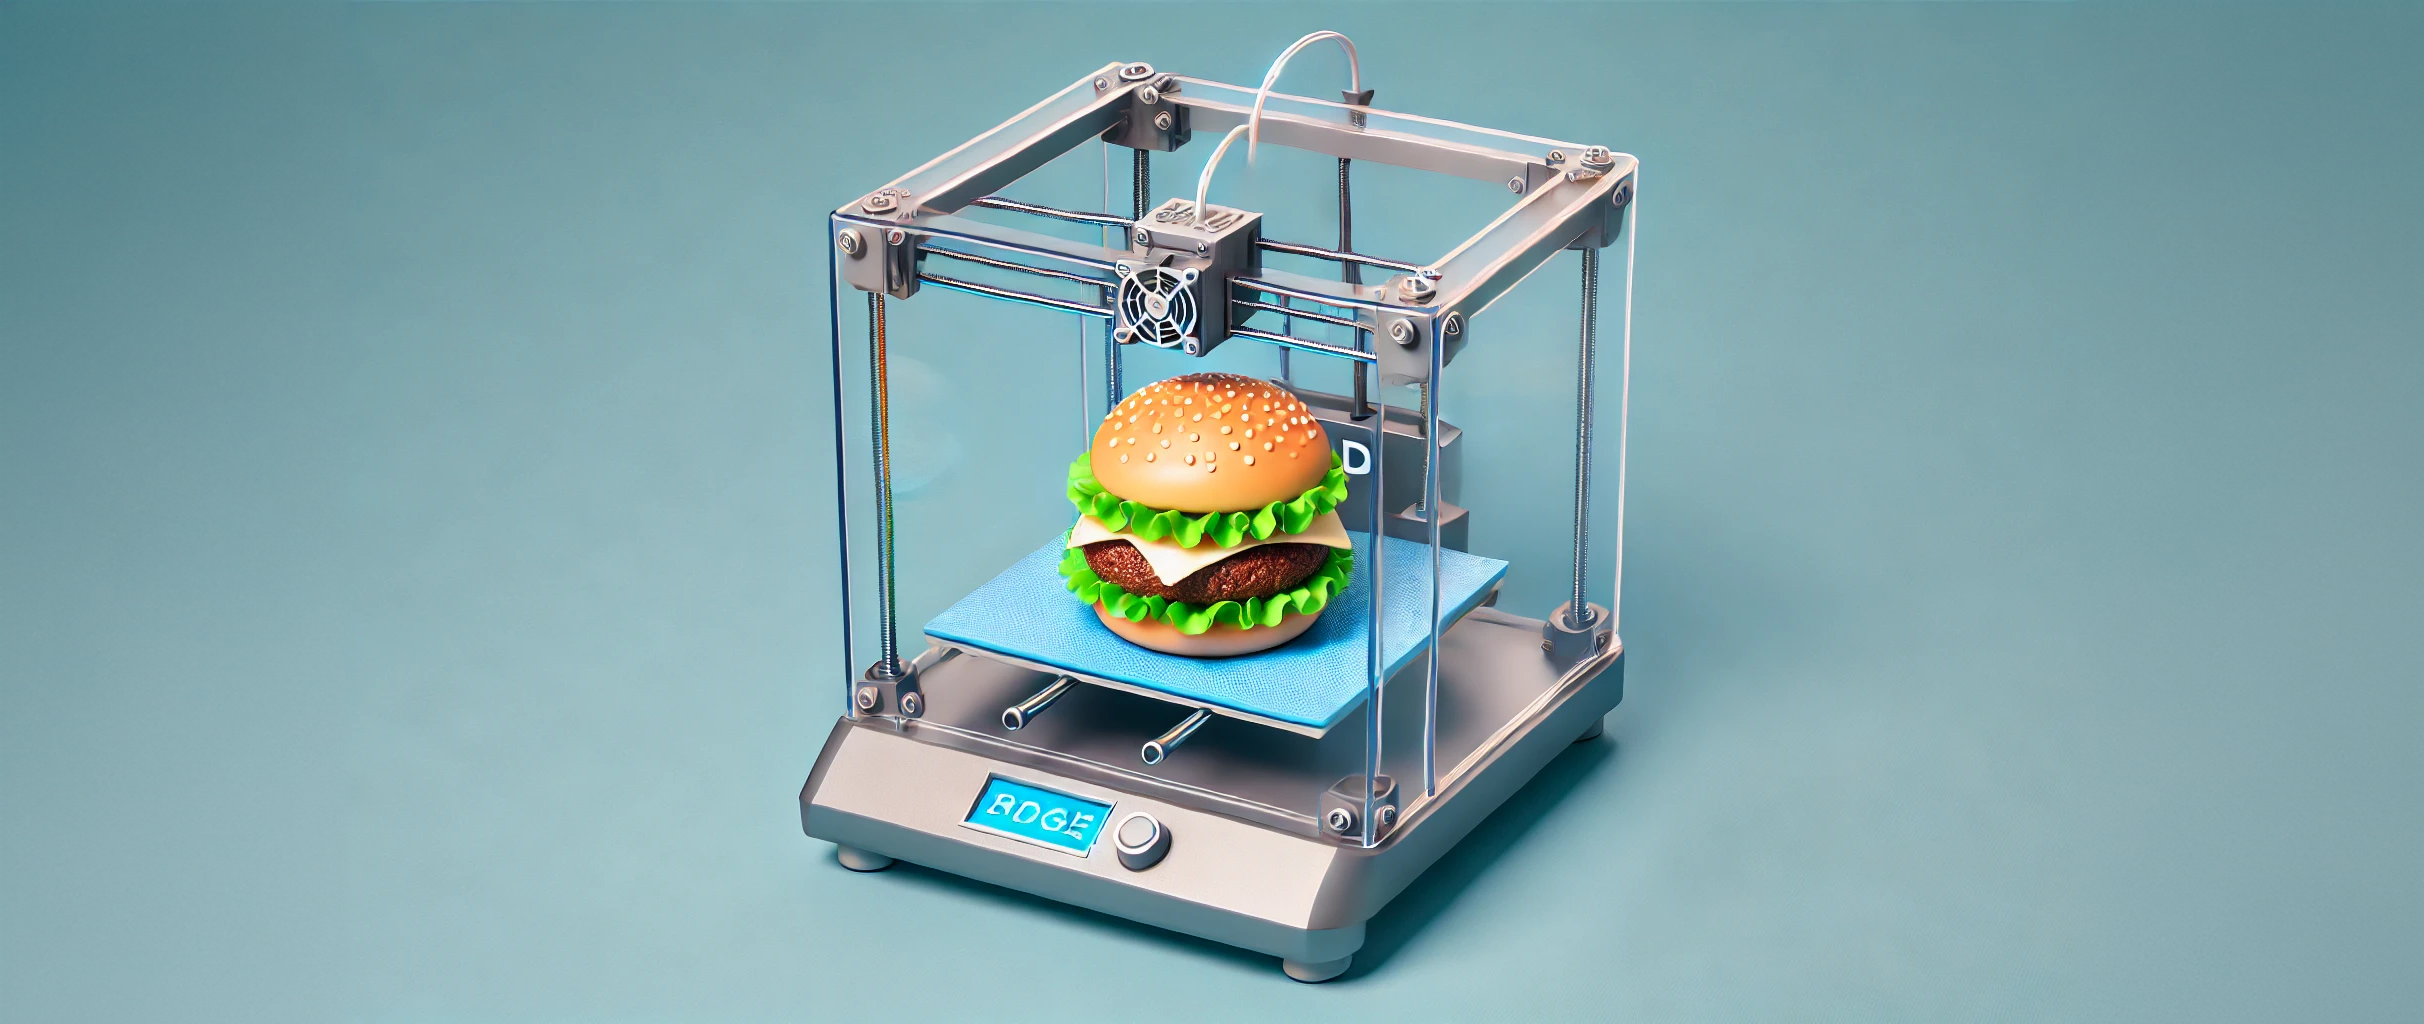 Une imprimante 3D produit un burger. © DALL·E, Futura, créé grâce à l'intelligence artificielle   